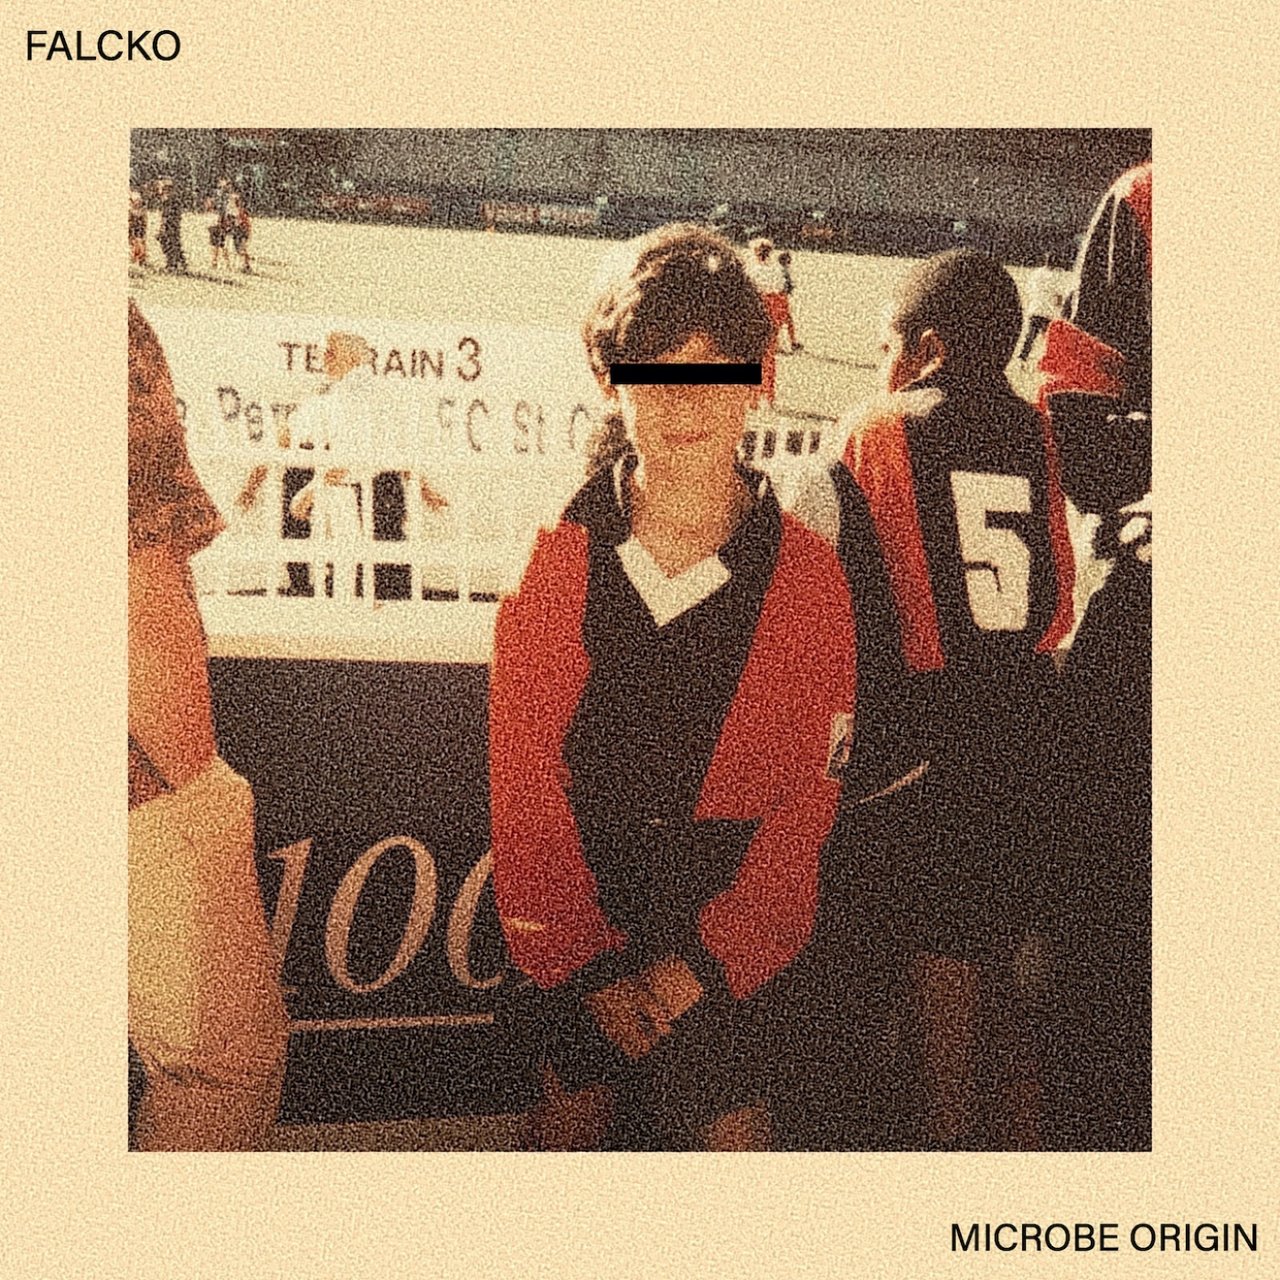 Falcko - Microbe Origin (Cover)